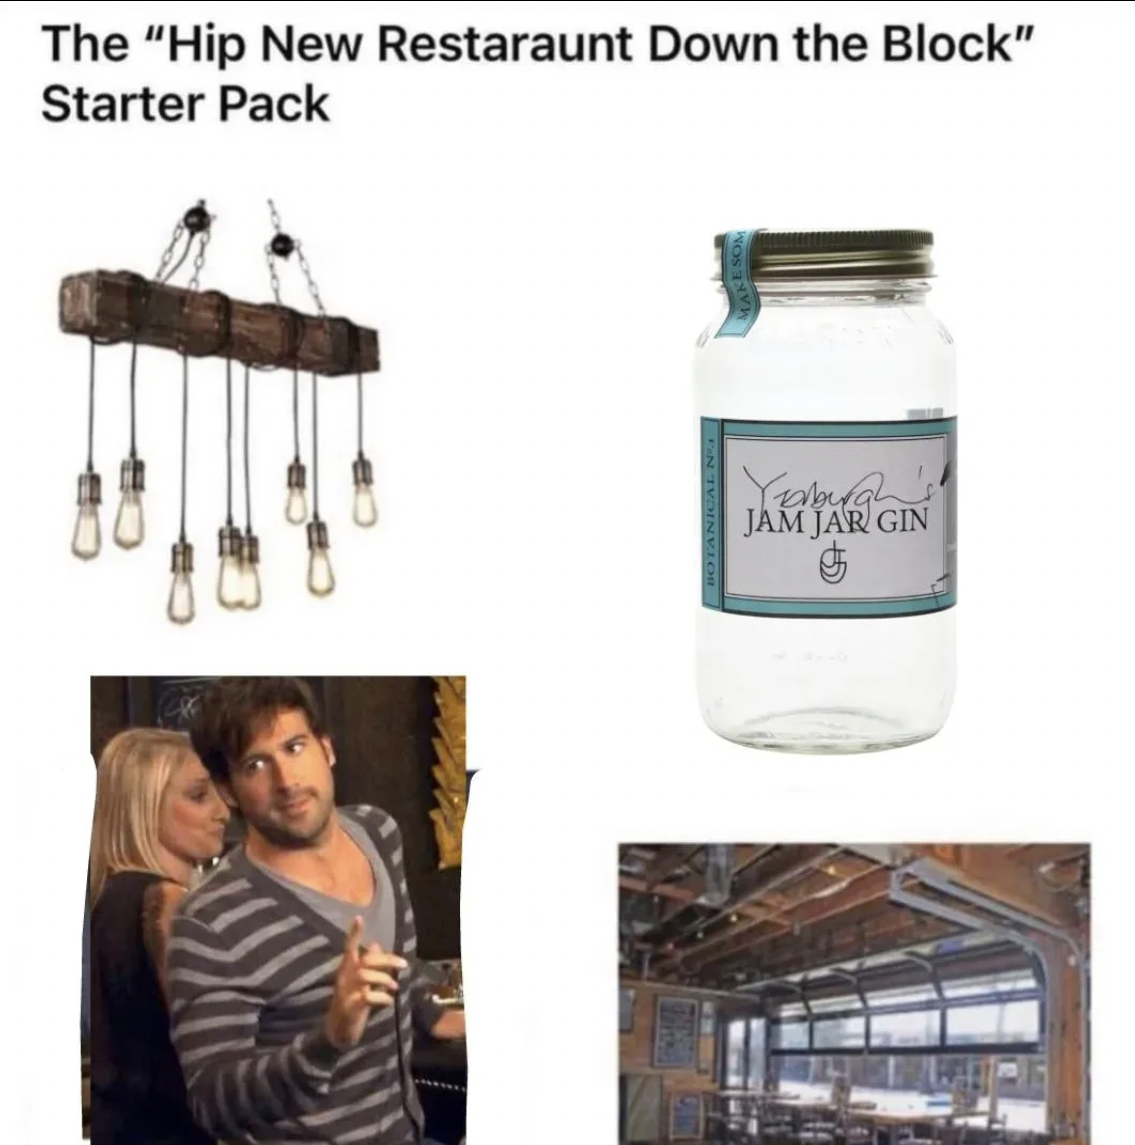 It's Always Sunny in Philadelphia memes - hip new restaurant down the block starter pack - The "Hip New Restaraunt Down the Block" Starter Pack Yamah Jam Jar Gin 5